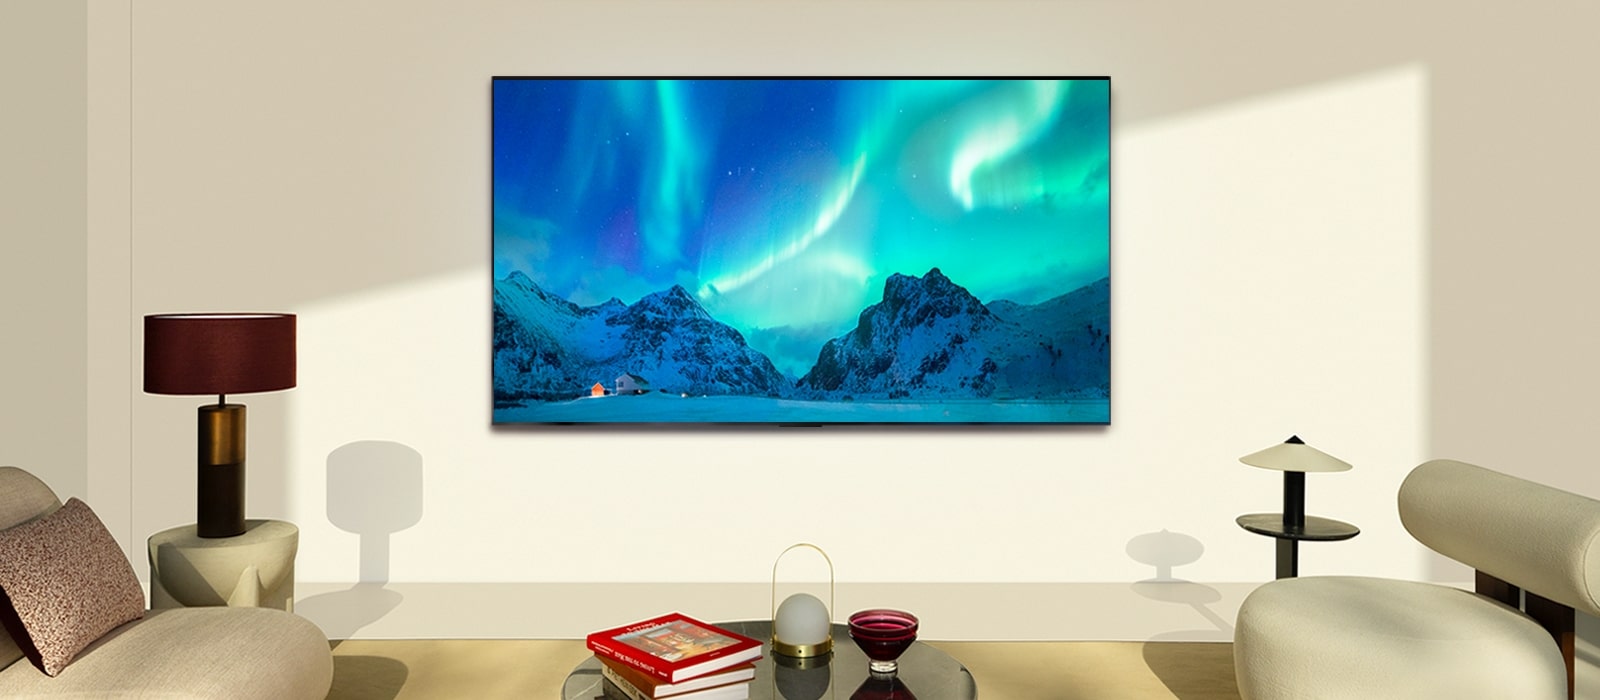 LG OLED TV i LG soundbar u savremenom životnom prostoru tokom dana. Na ekranu se prikazuje aurora borealis uz idealne nivoe osvetljenosti.